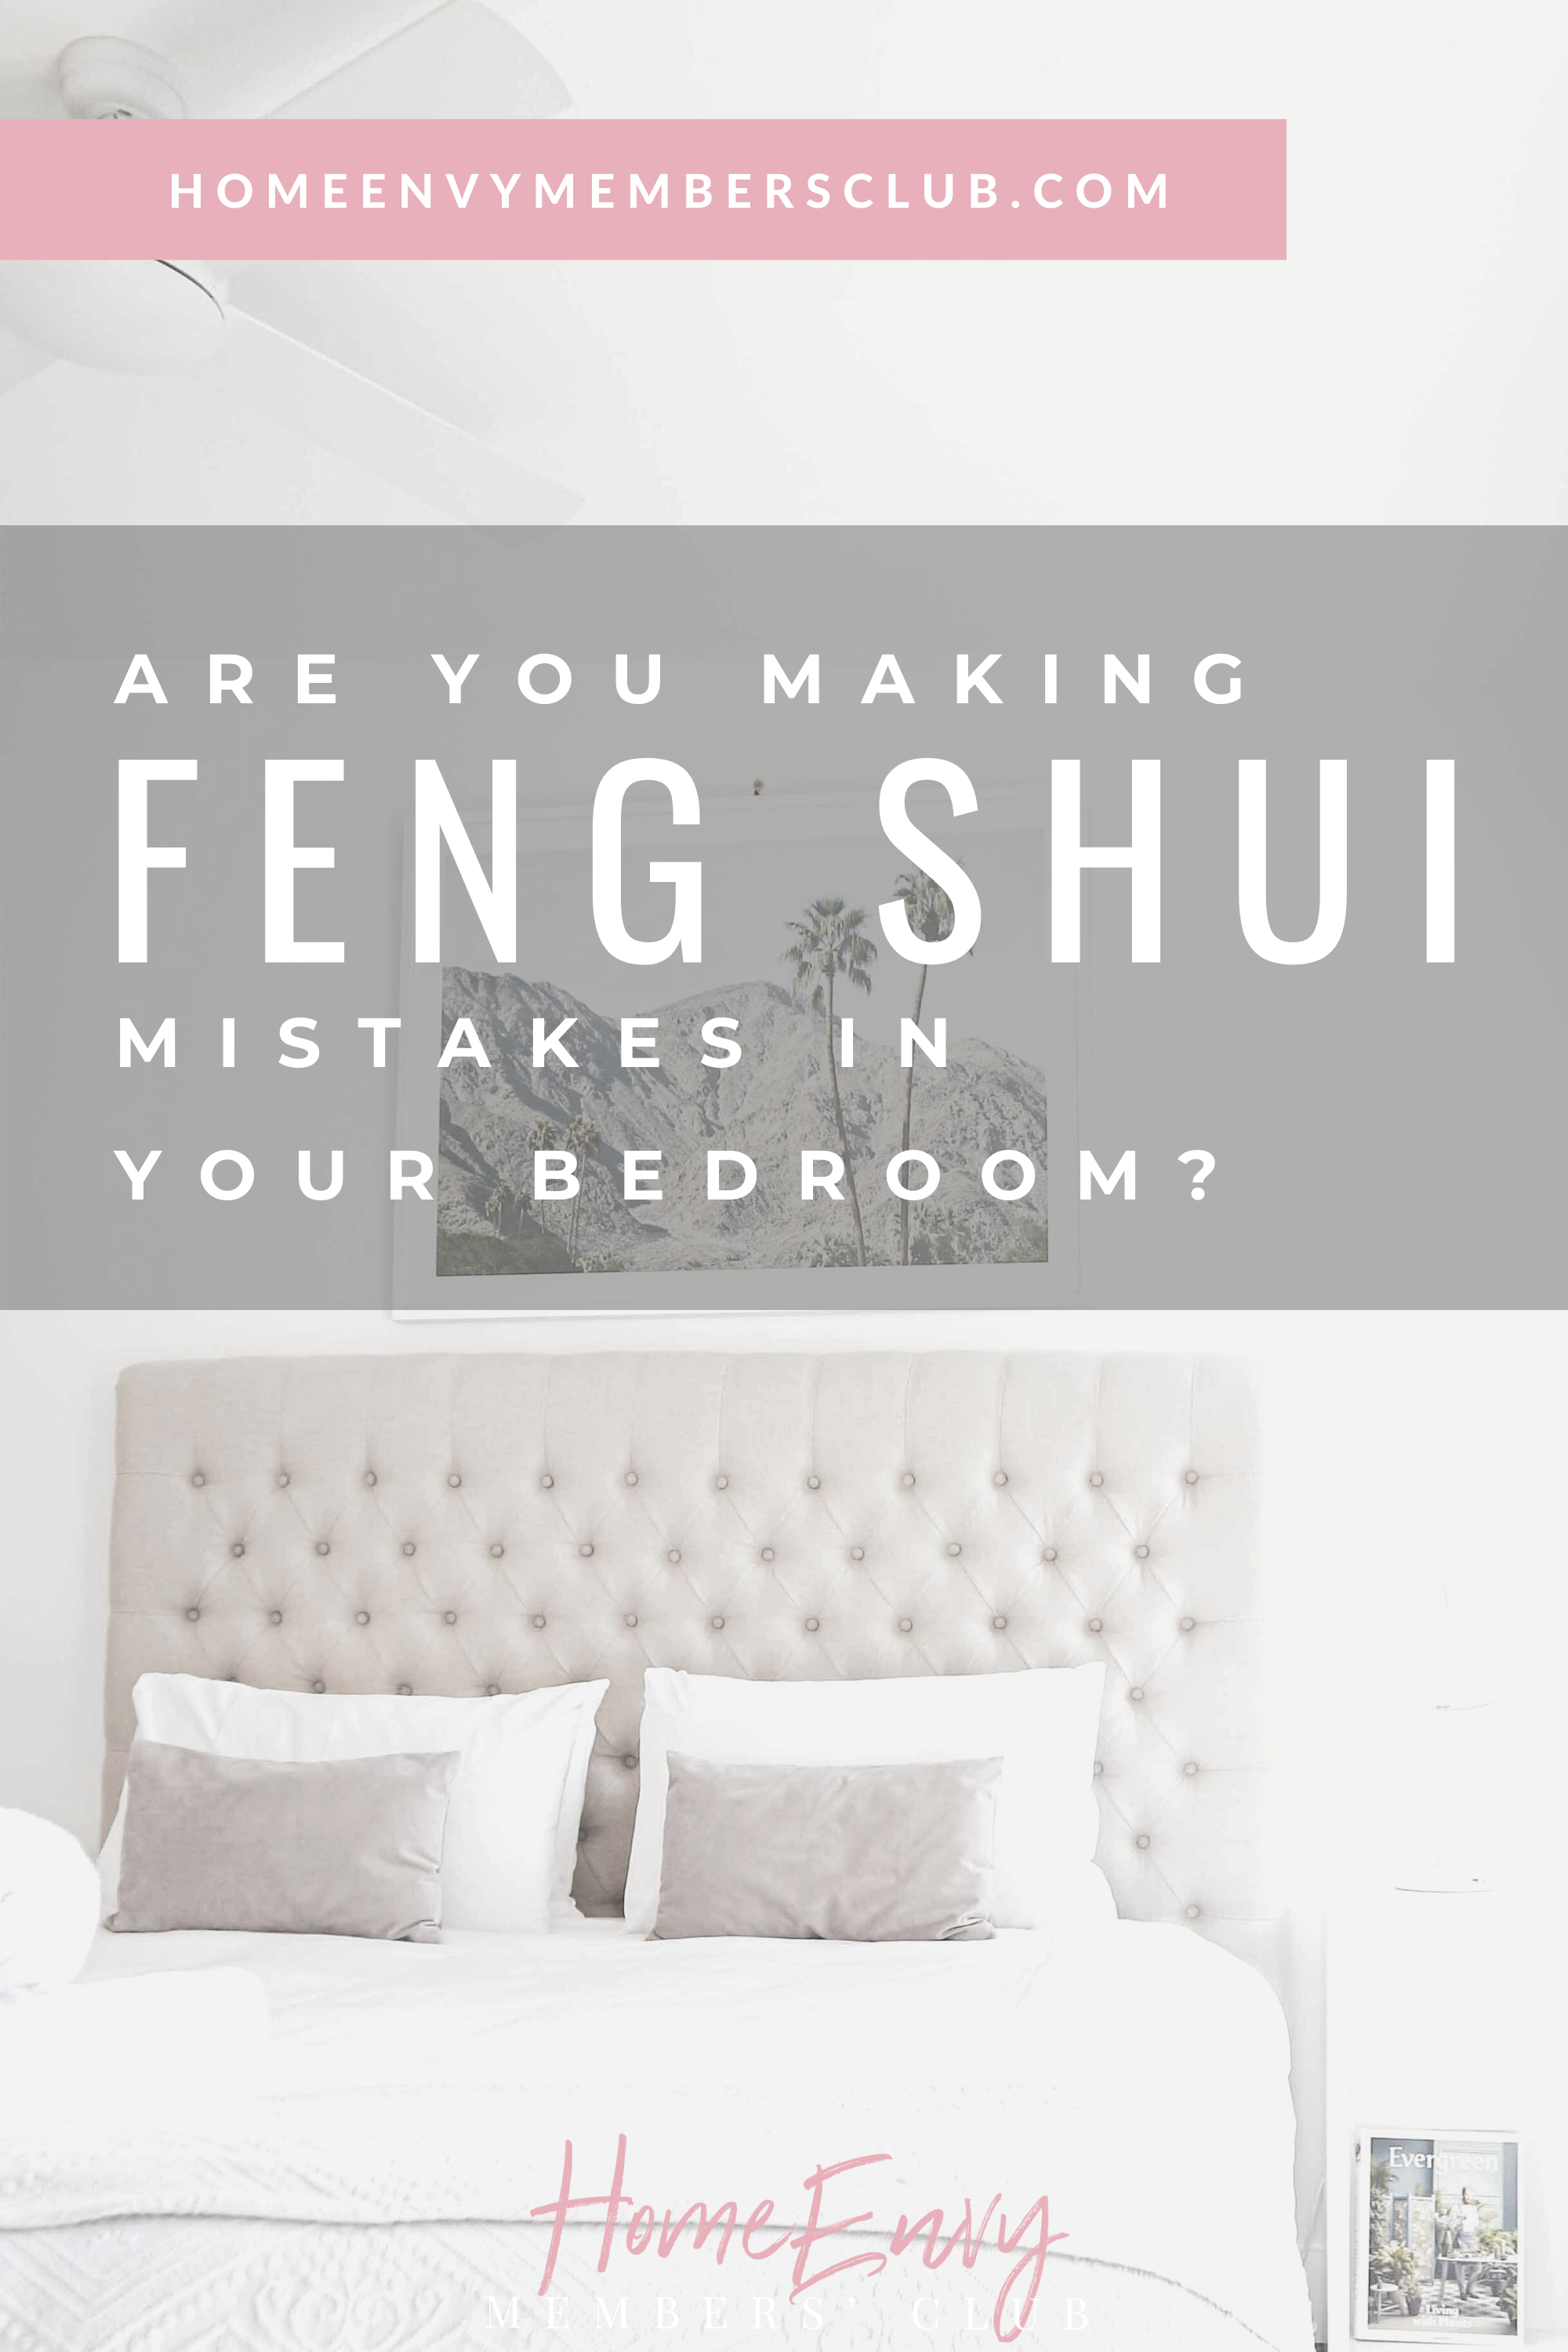 11 Feng Shui Bedroom Layout Ideas The Homeenvy Members Club,Dog Seizures Look Like